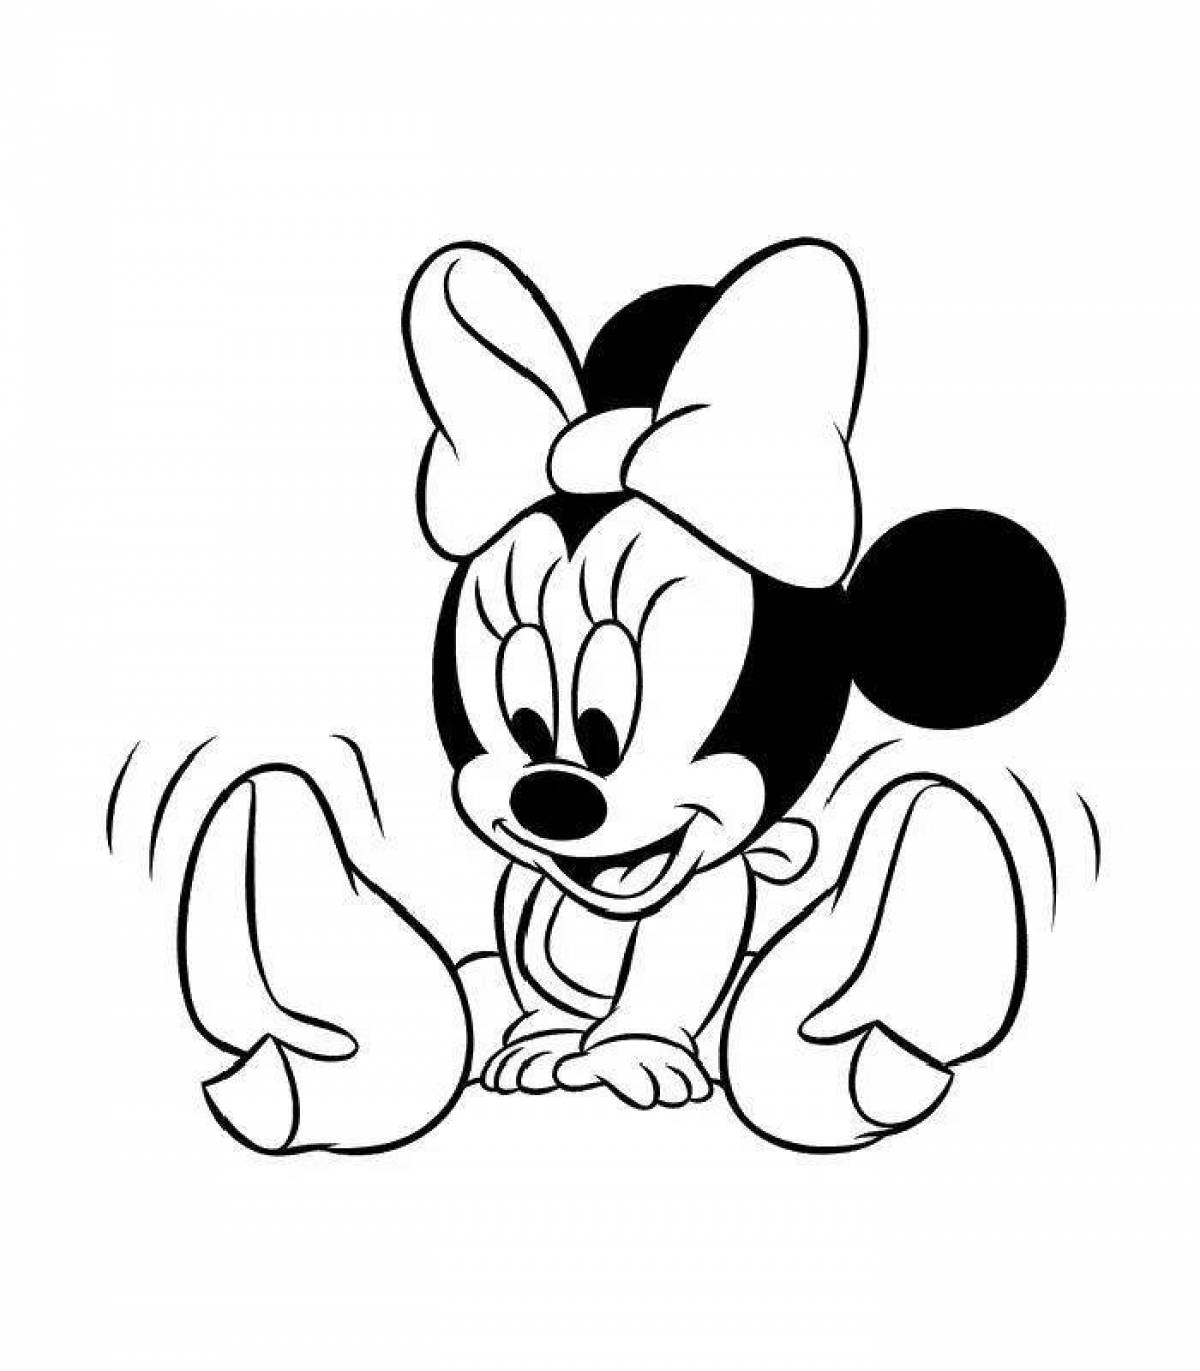 Playful coloring cartoon mouse